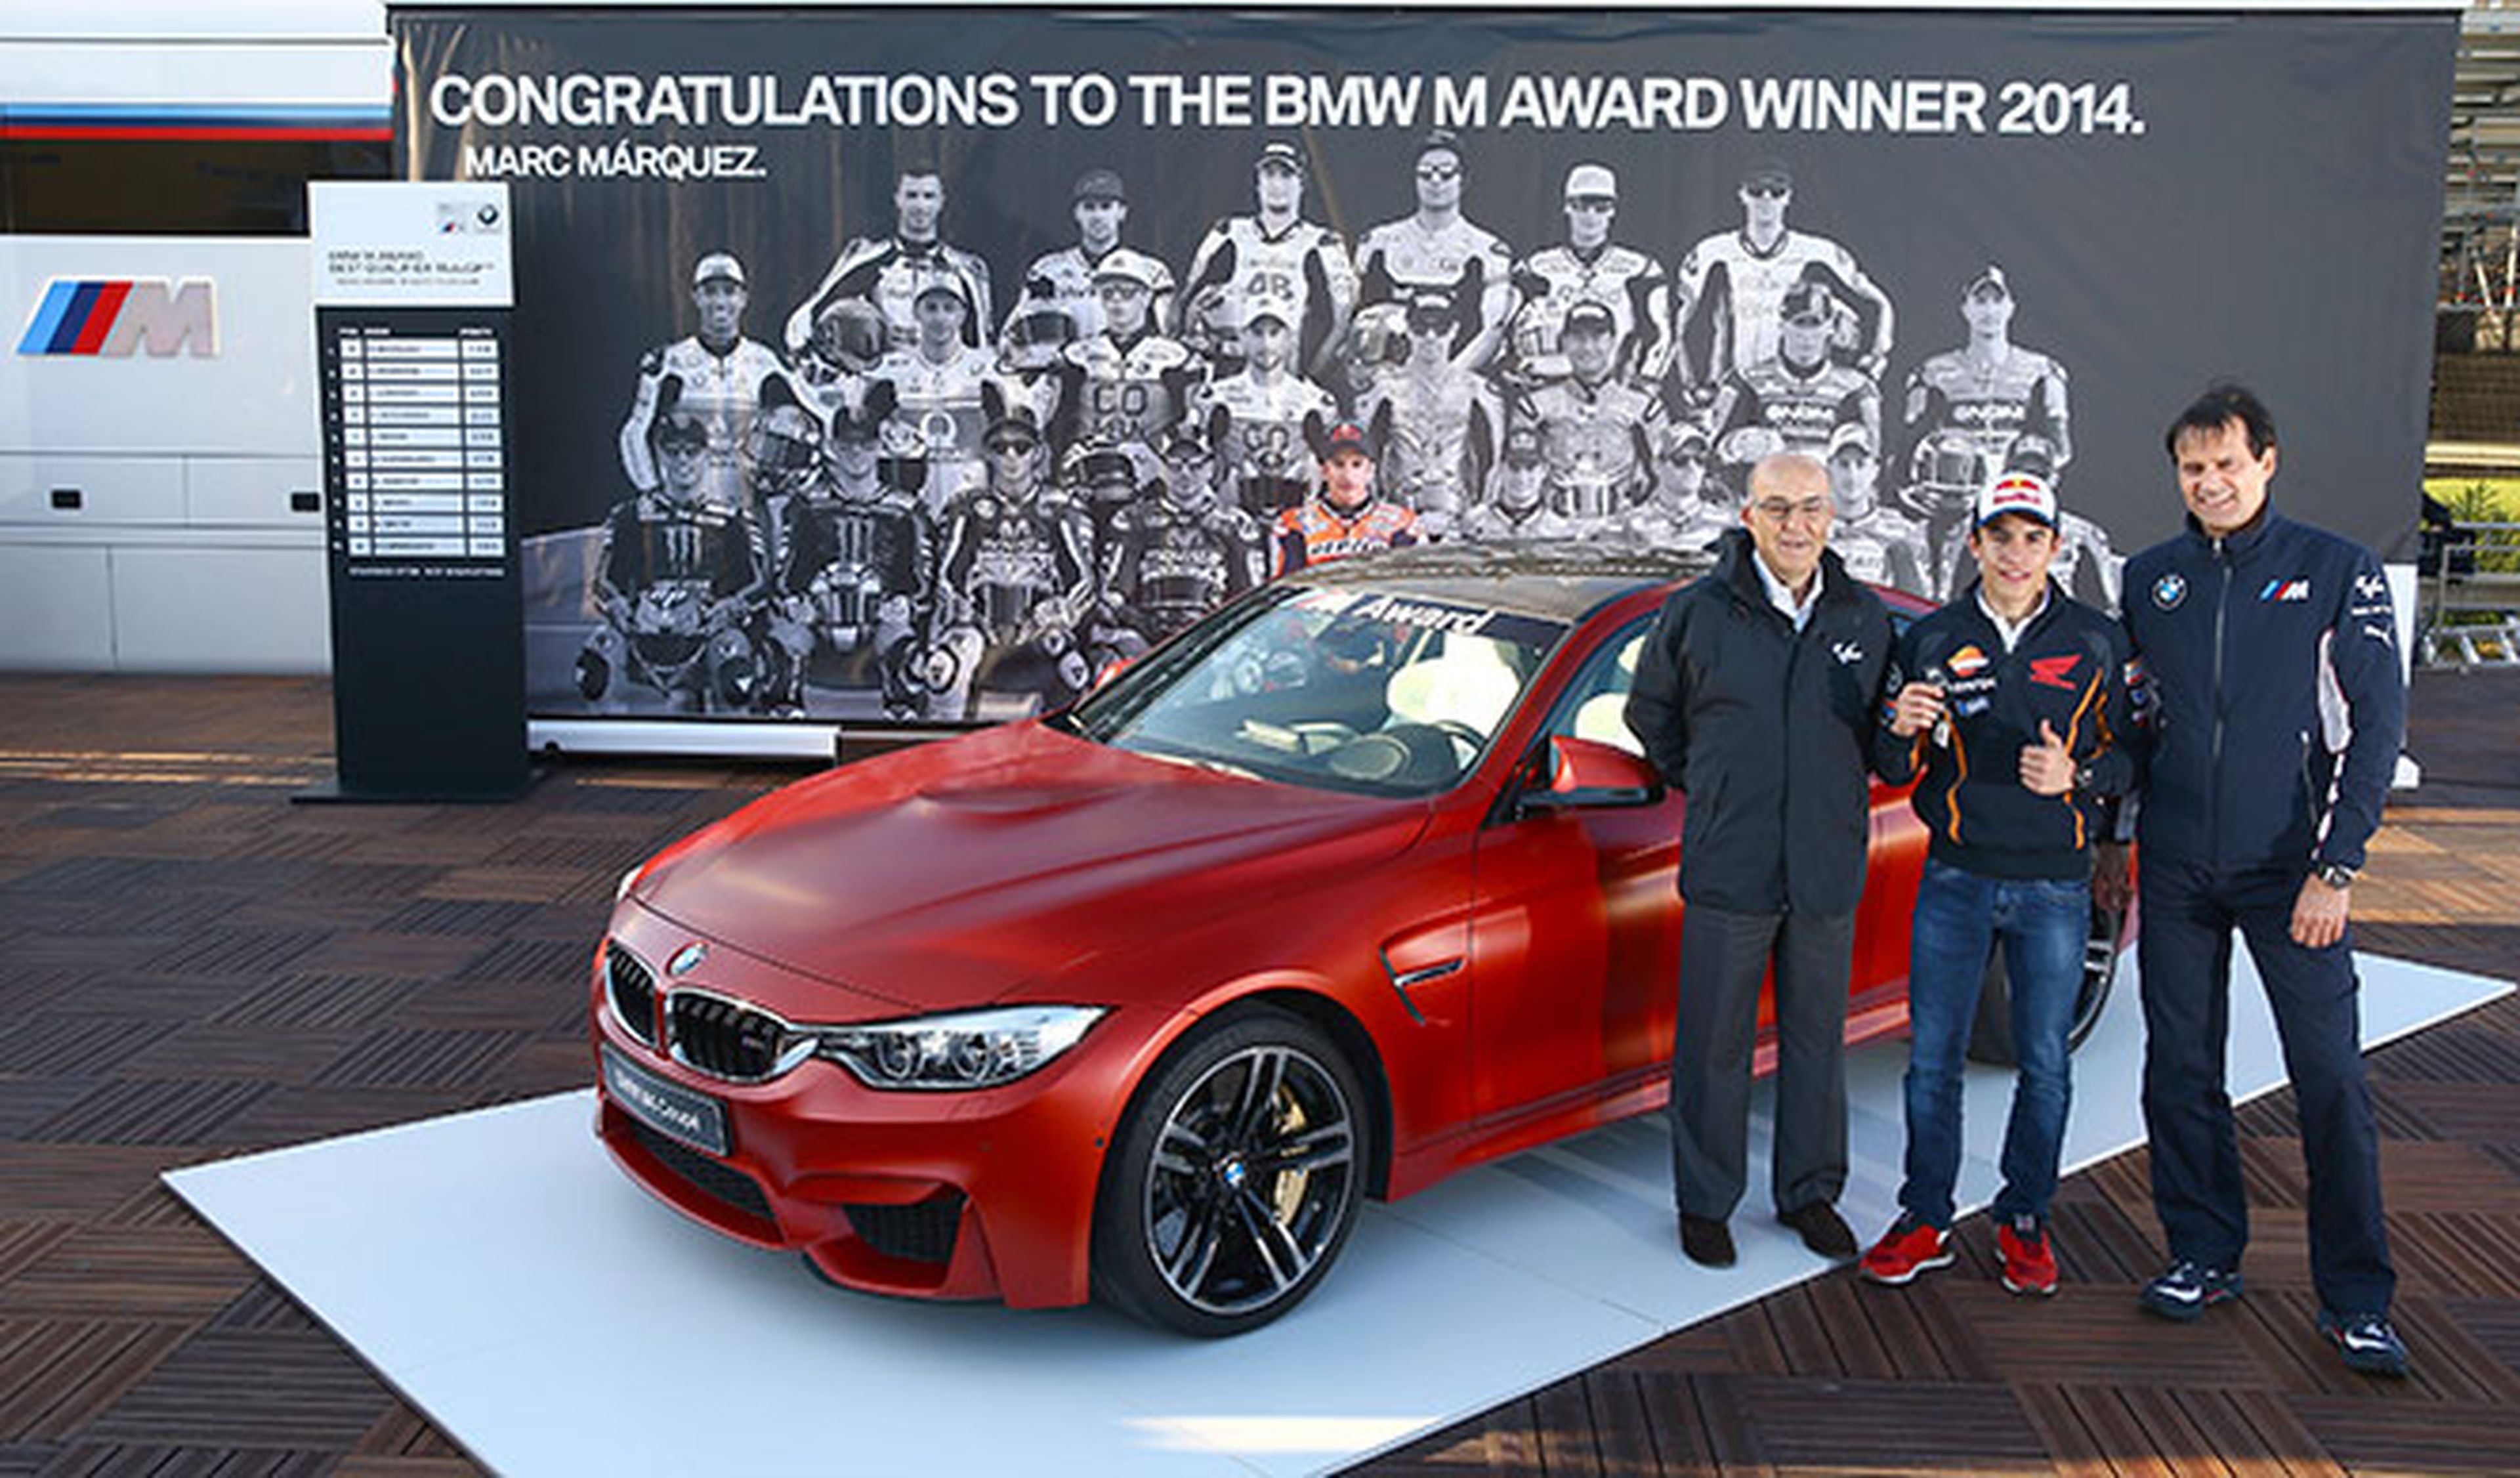 BMW M Awards 2014: Marc Márquez gana un BMW M4 Coupé